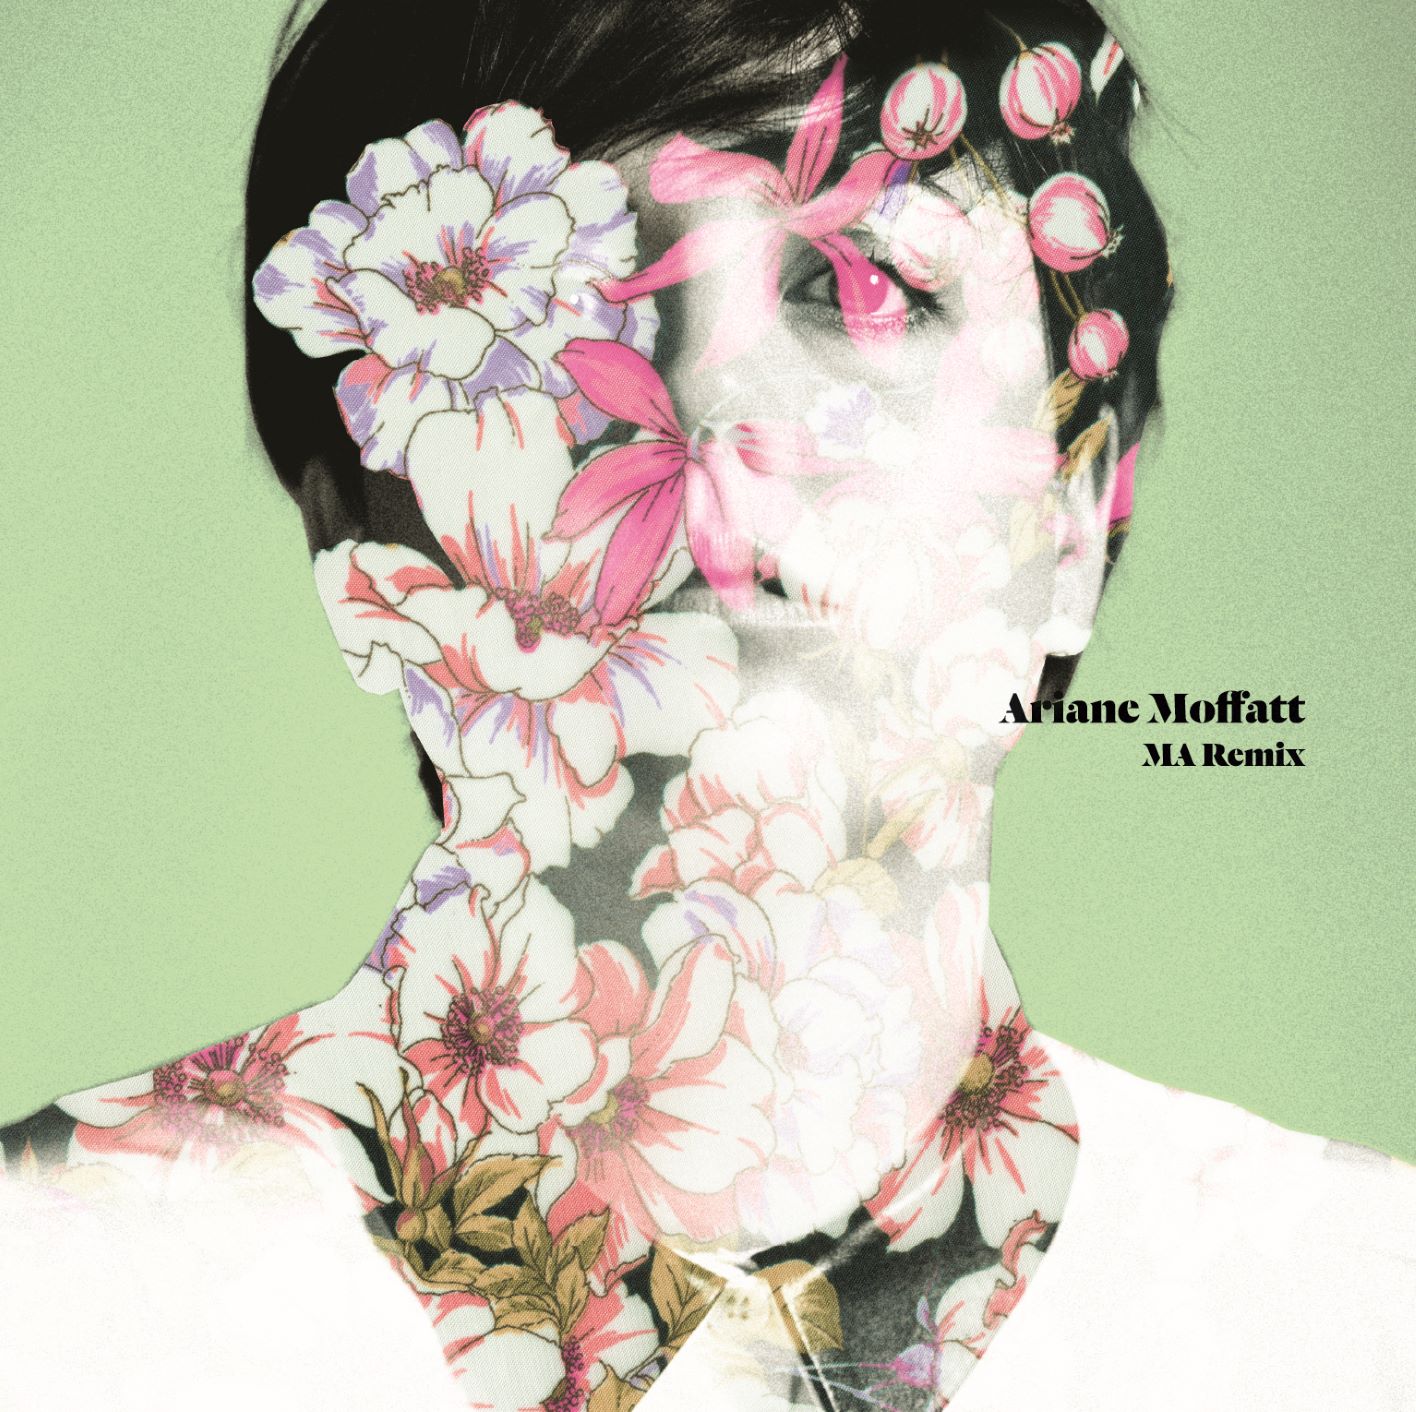 MA (remix) - Ariane Moffatt